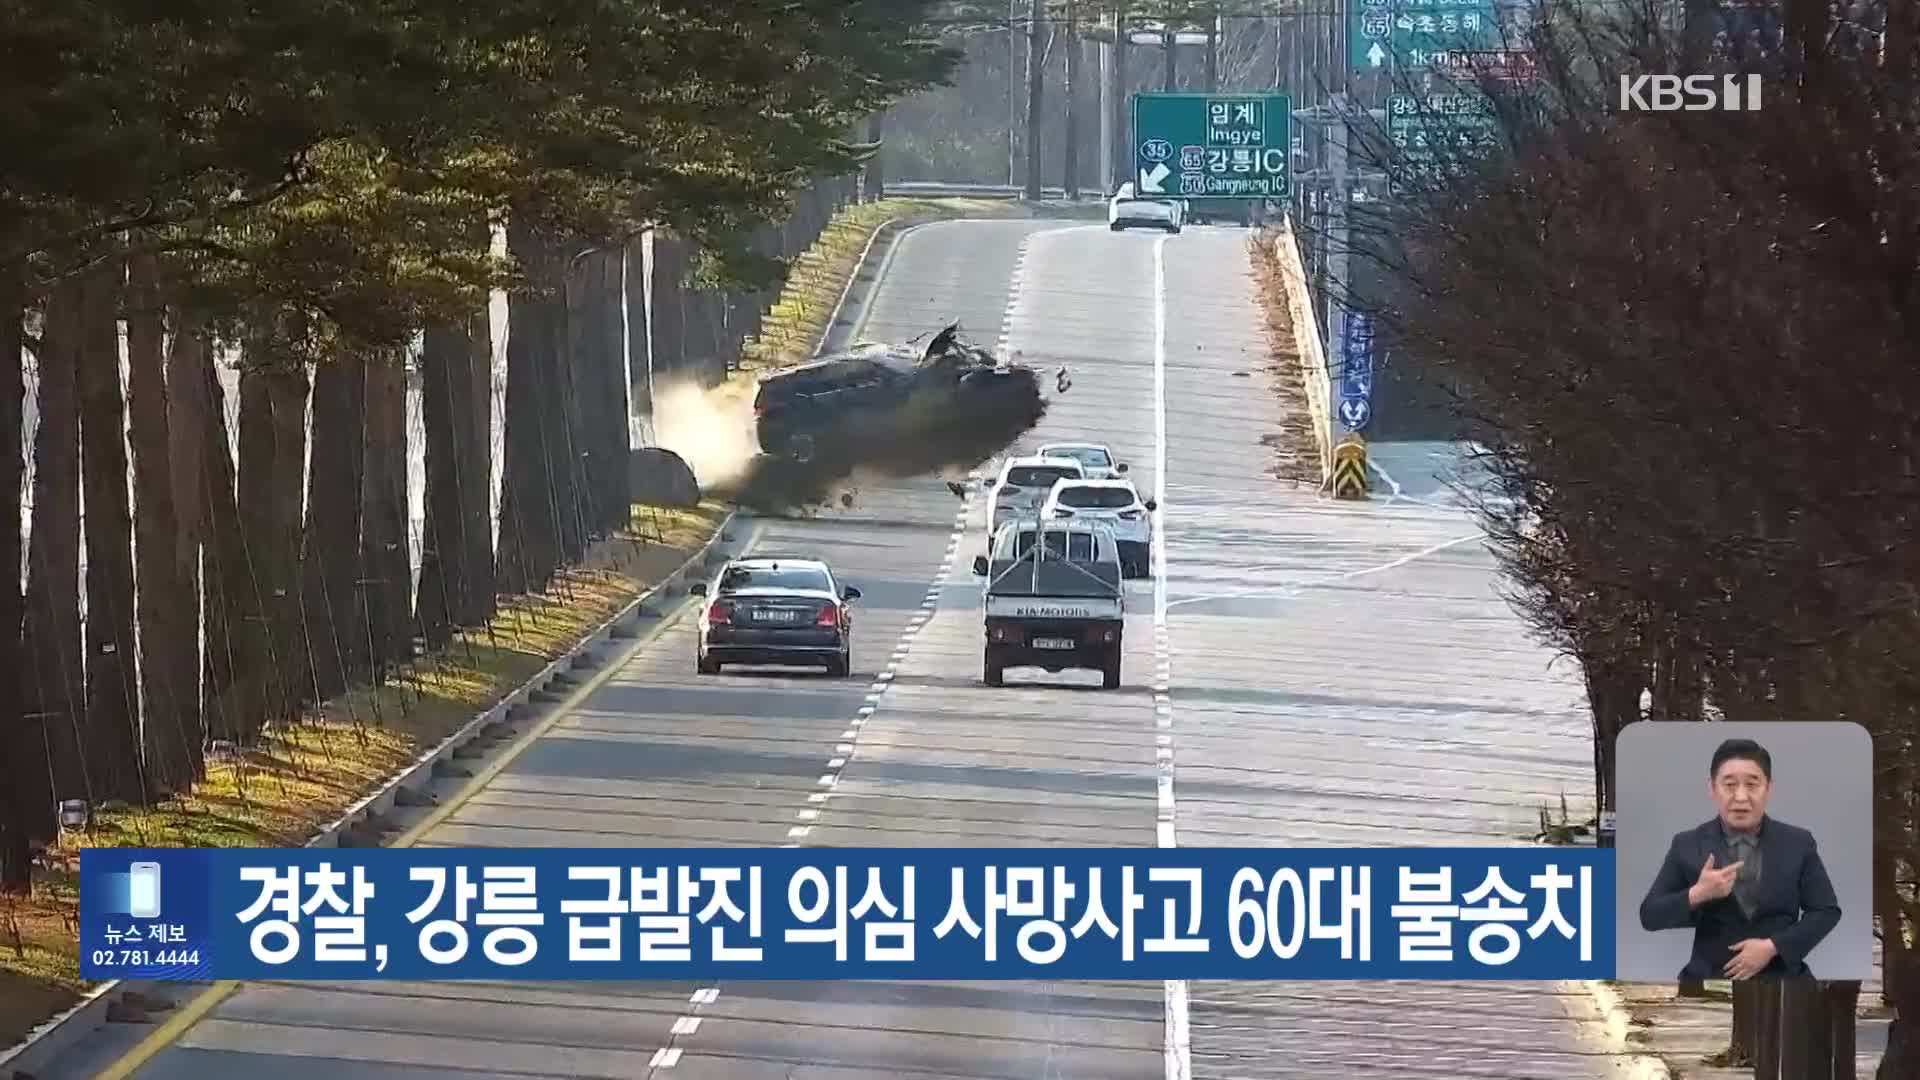 경찰, 강릉 급발진 의심 사망사고 60대 불송치